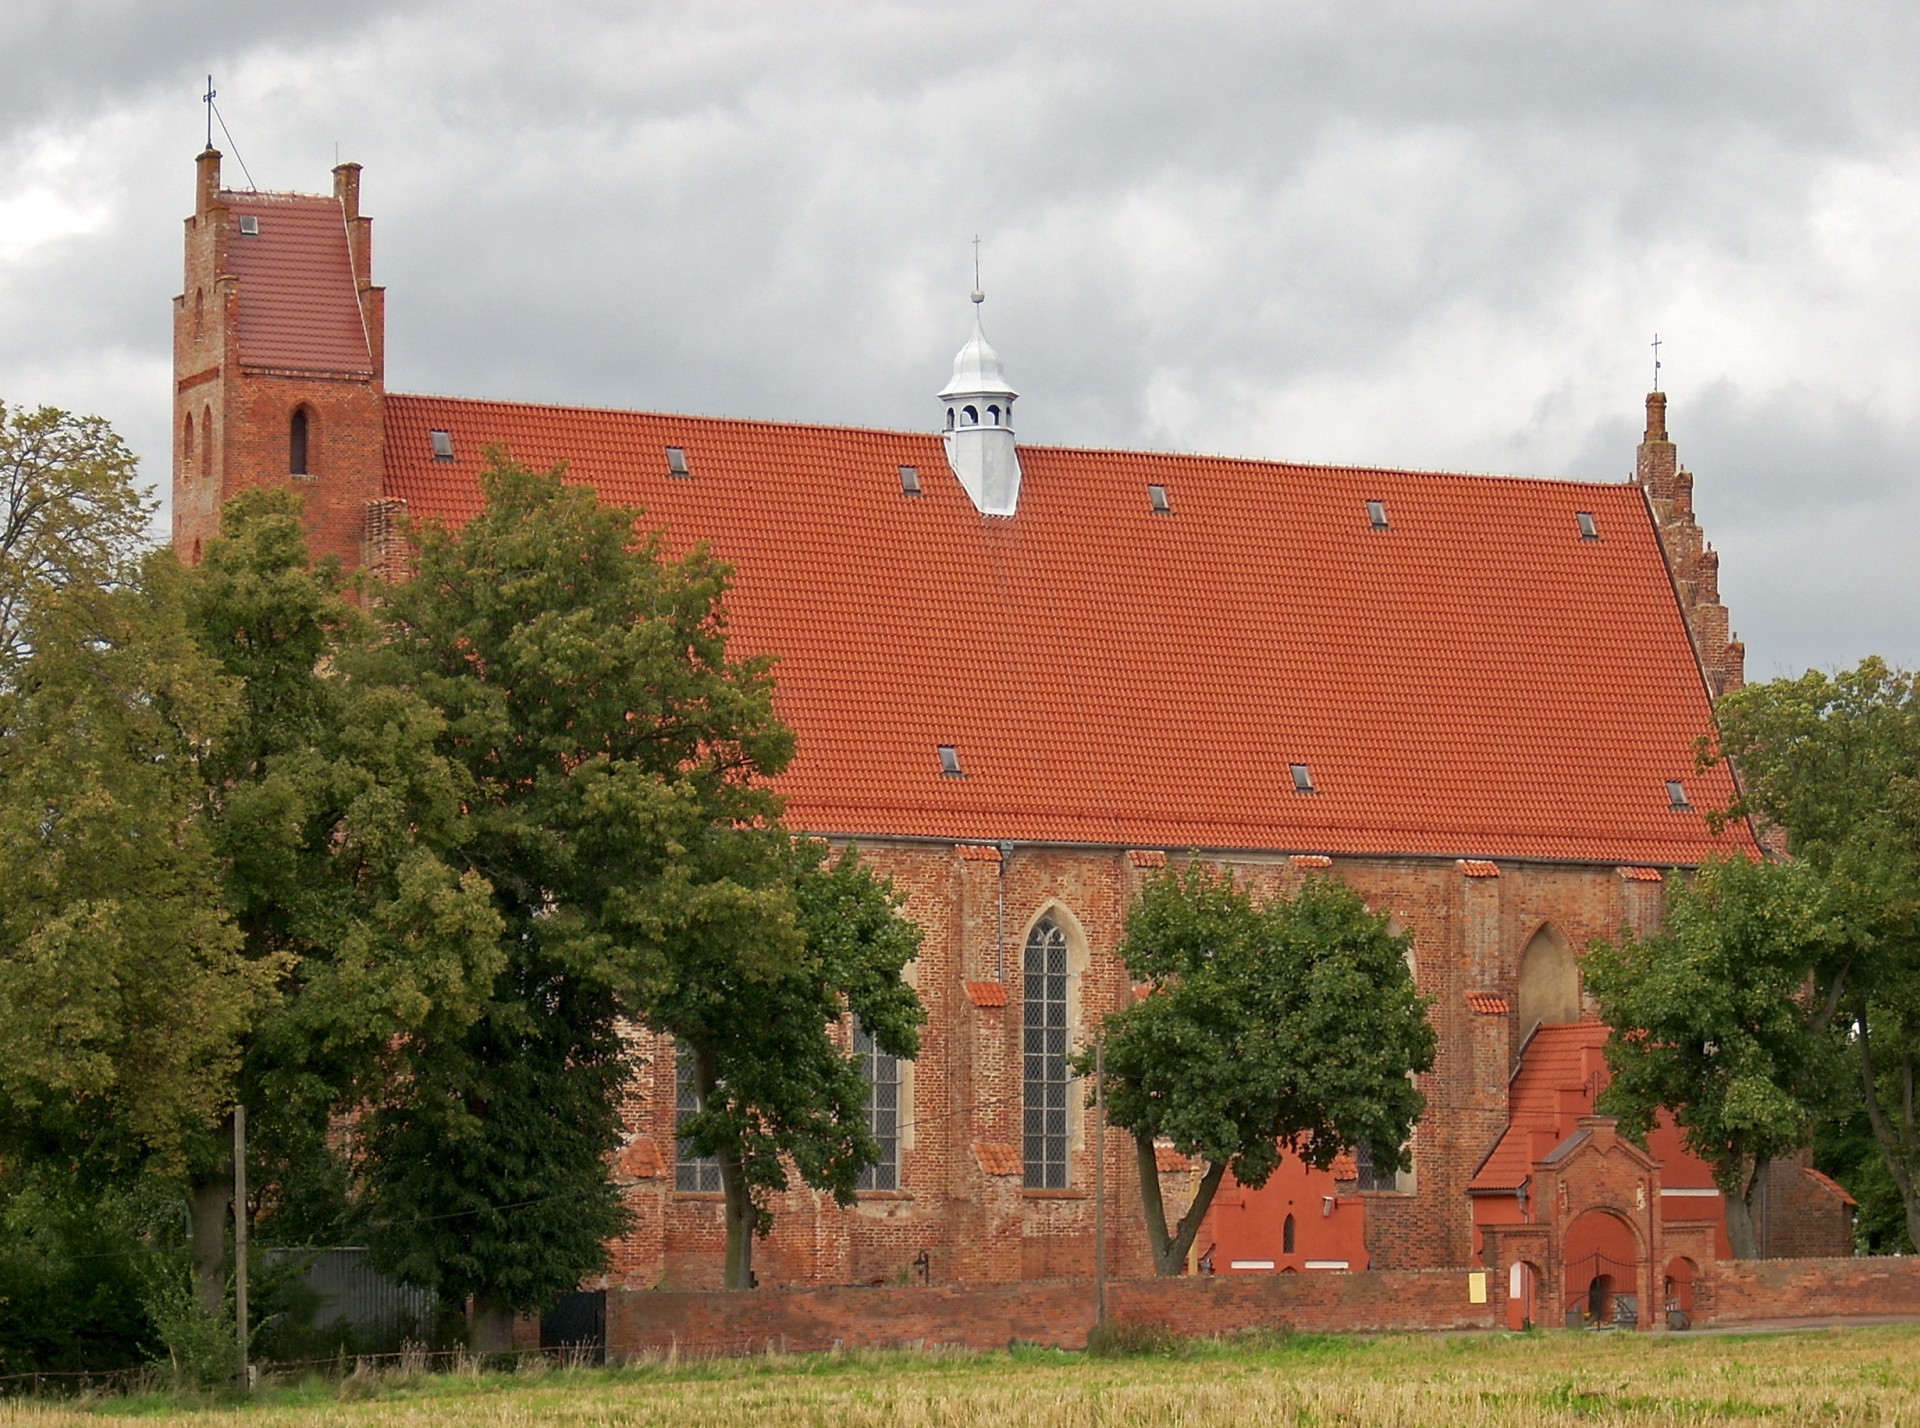 Fot.: Żarnowiec, Kościół Zwiastowania Pana, źródło: Wikipedia, autor: Chrumps